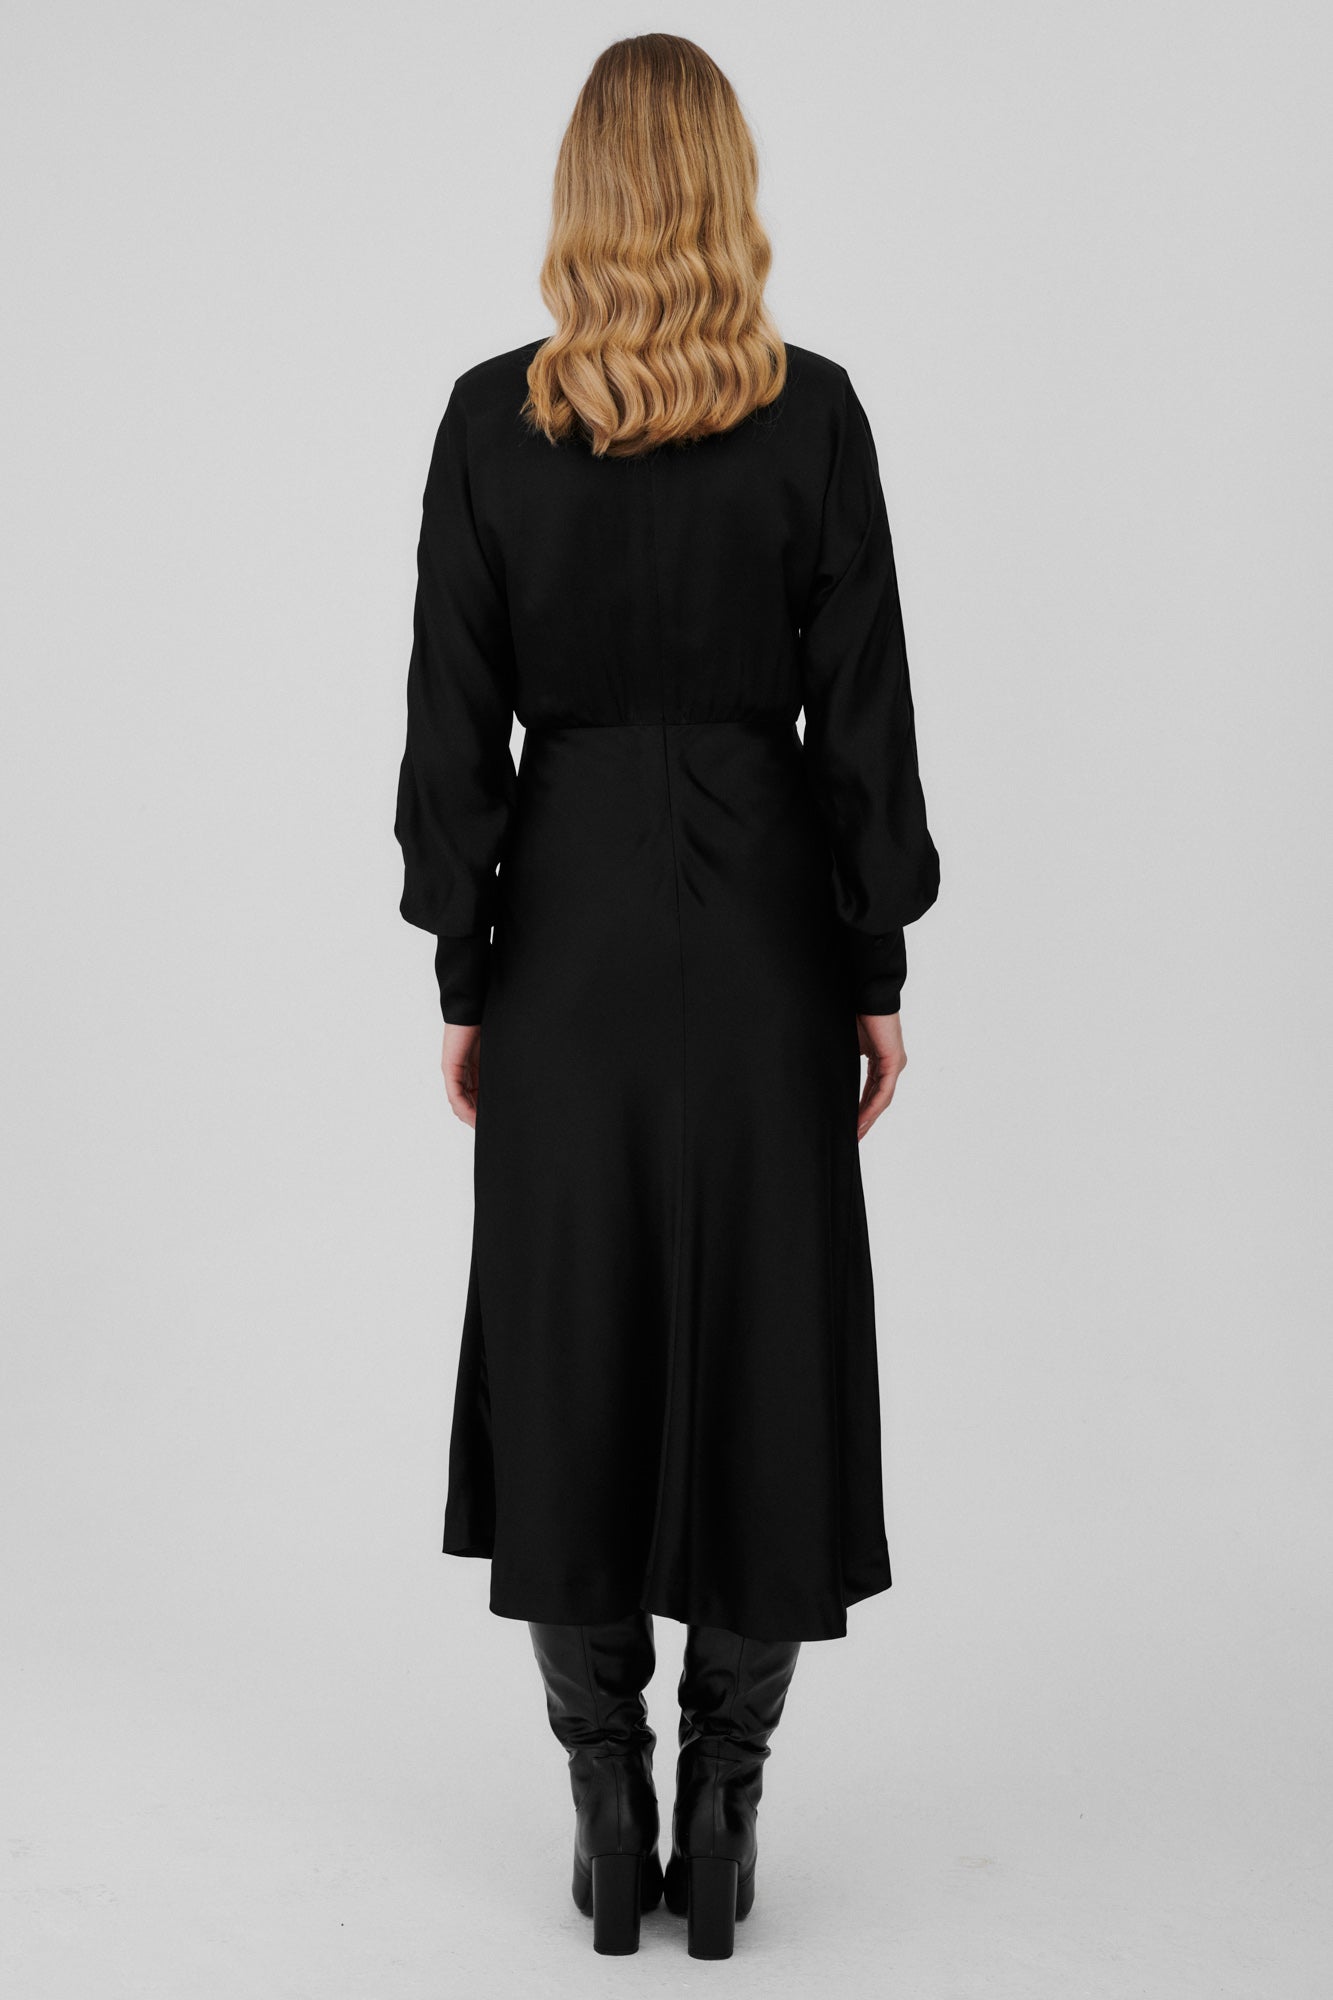 Sukienka z wiskozy / 03 / 12 / onyx black ** ?Modelka ma 177cm wzrostu i nosi rozmiar S?